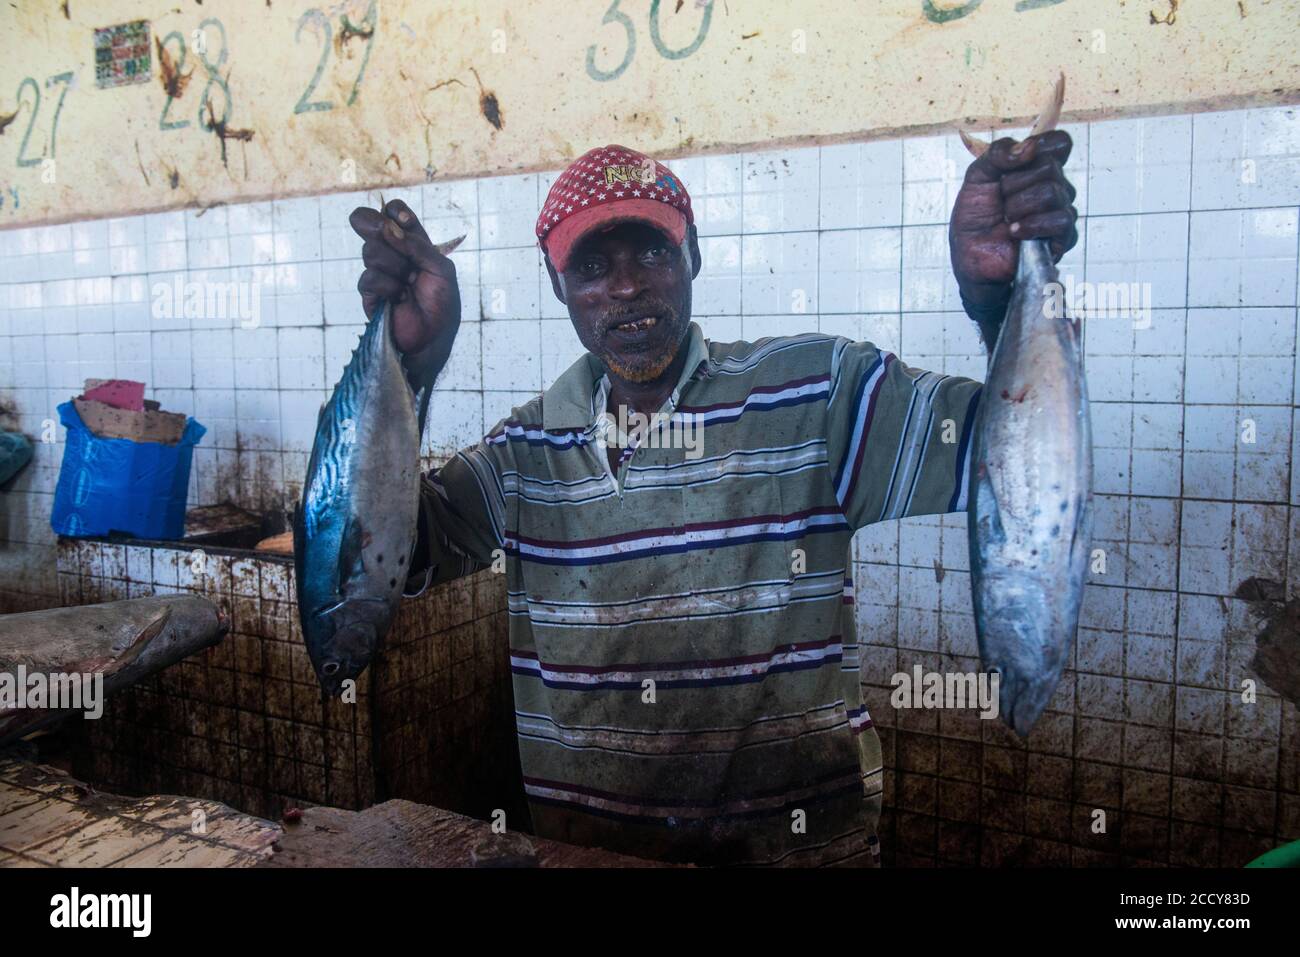 Homme somalien offrant son poisson dans le marché des poissons, Mogadiscio, Somalie Banque D'Images